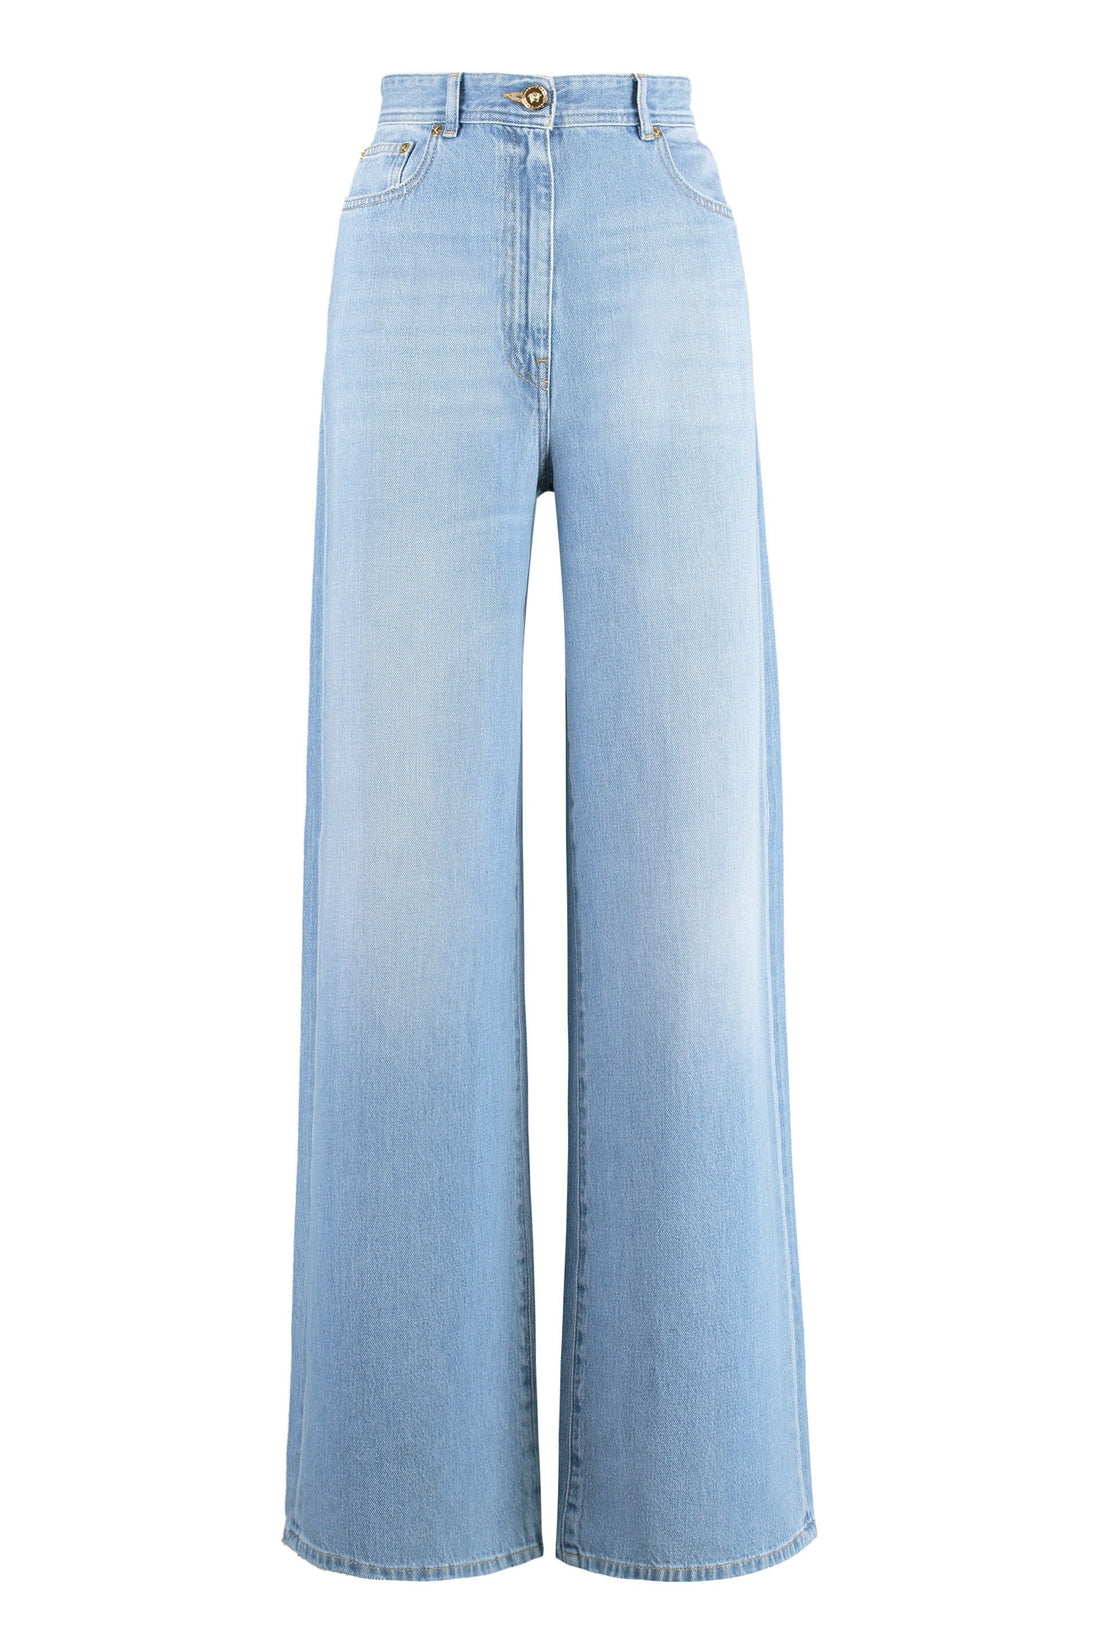 Versace-OUTLET-SALE-High-waist wide-leg jeans-ARCHIVIST